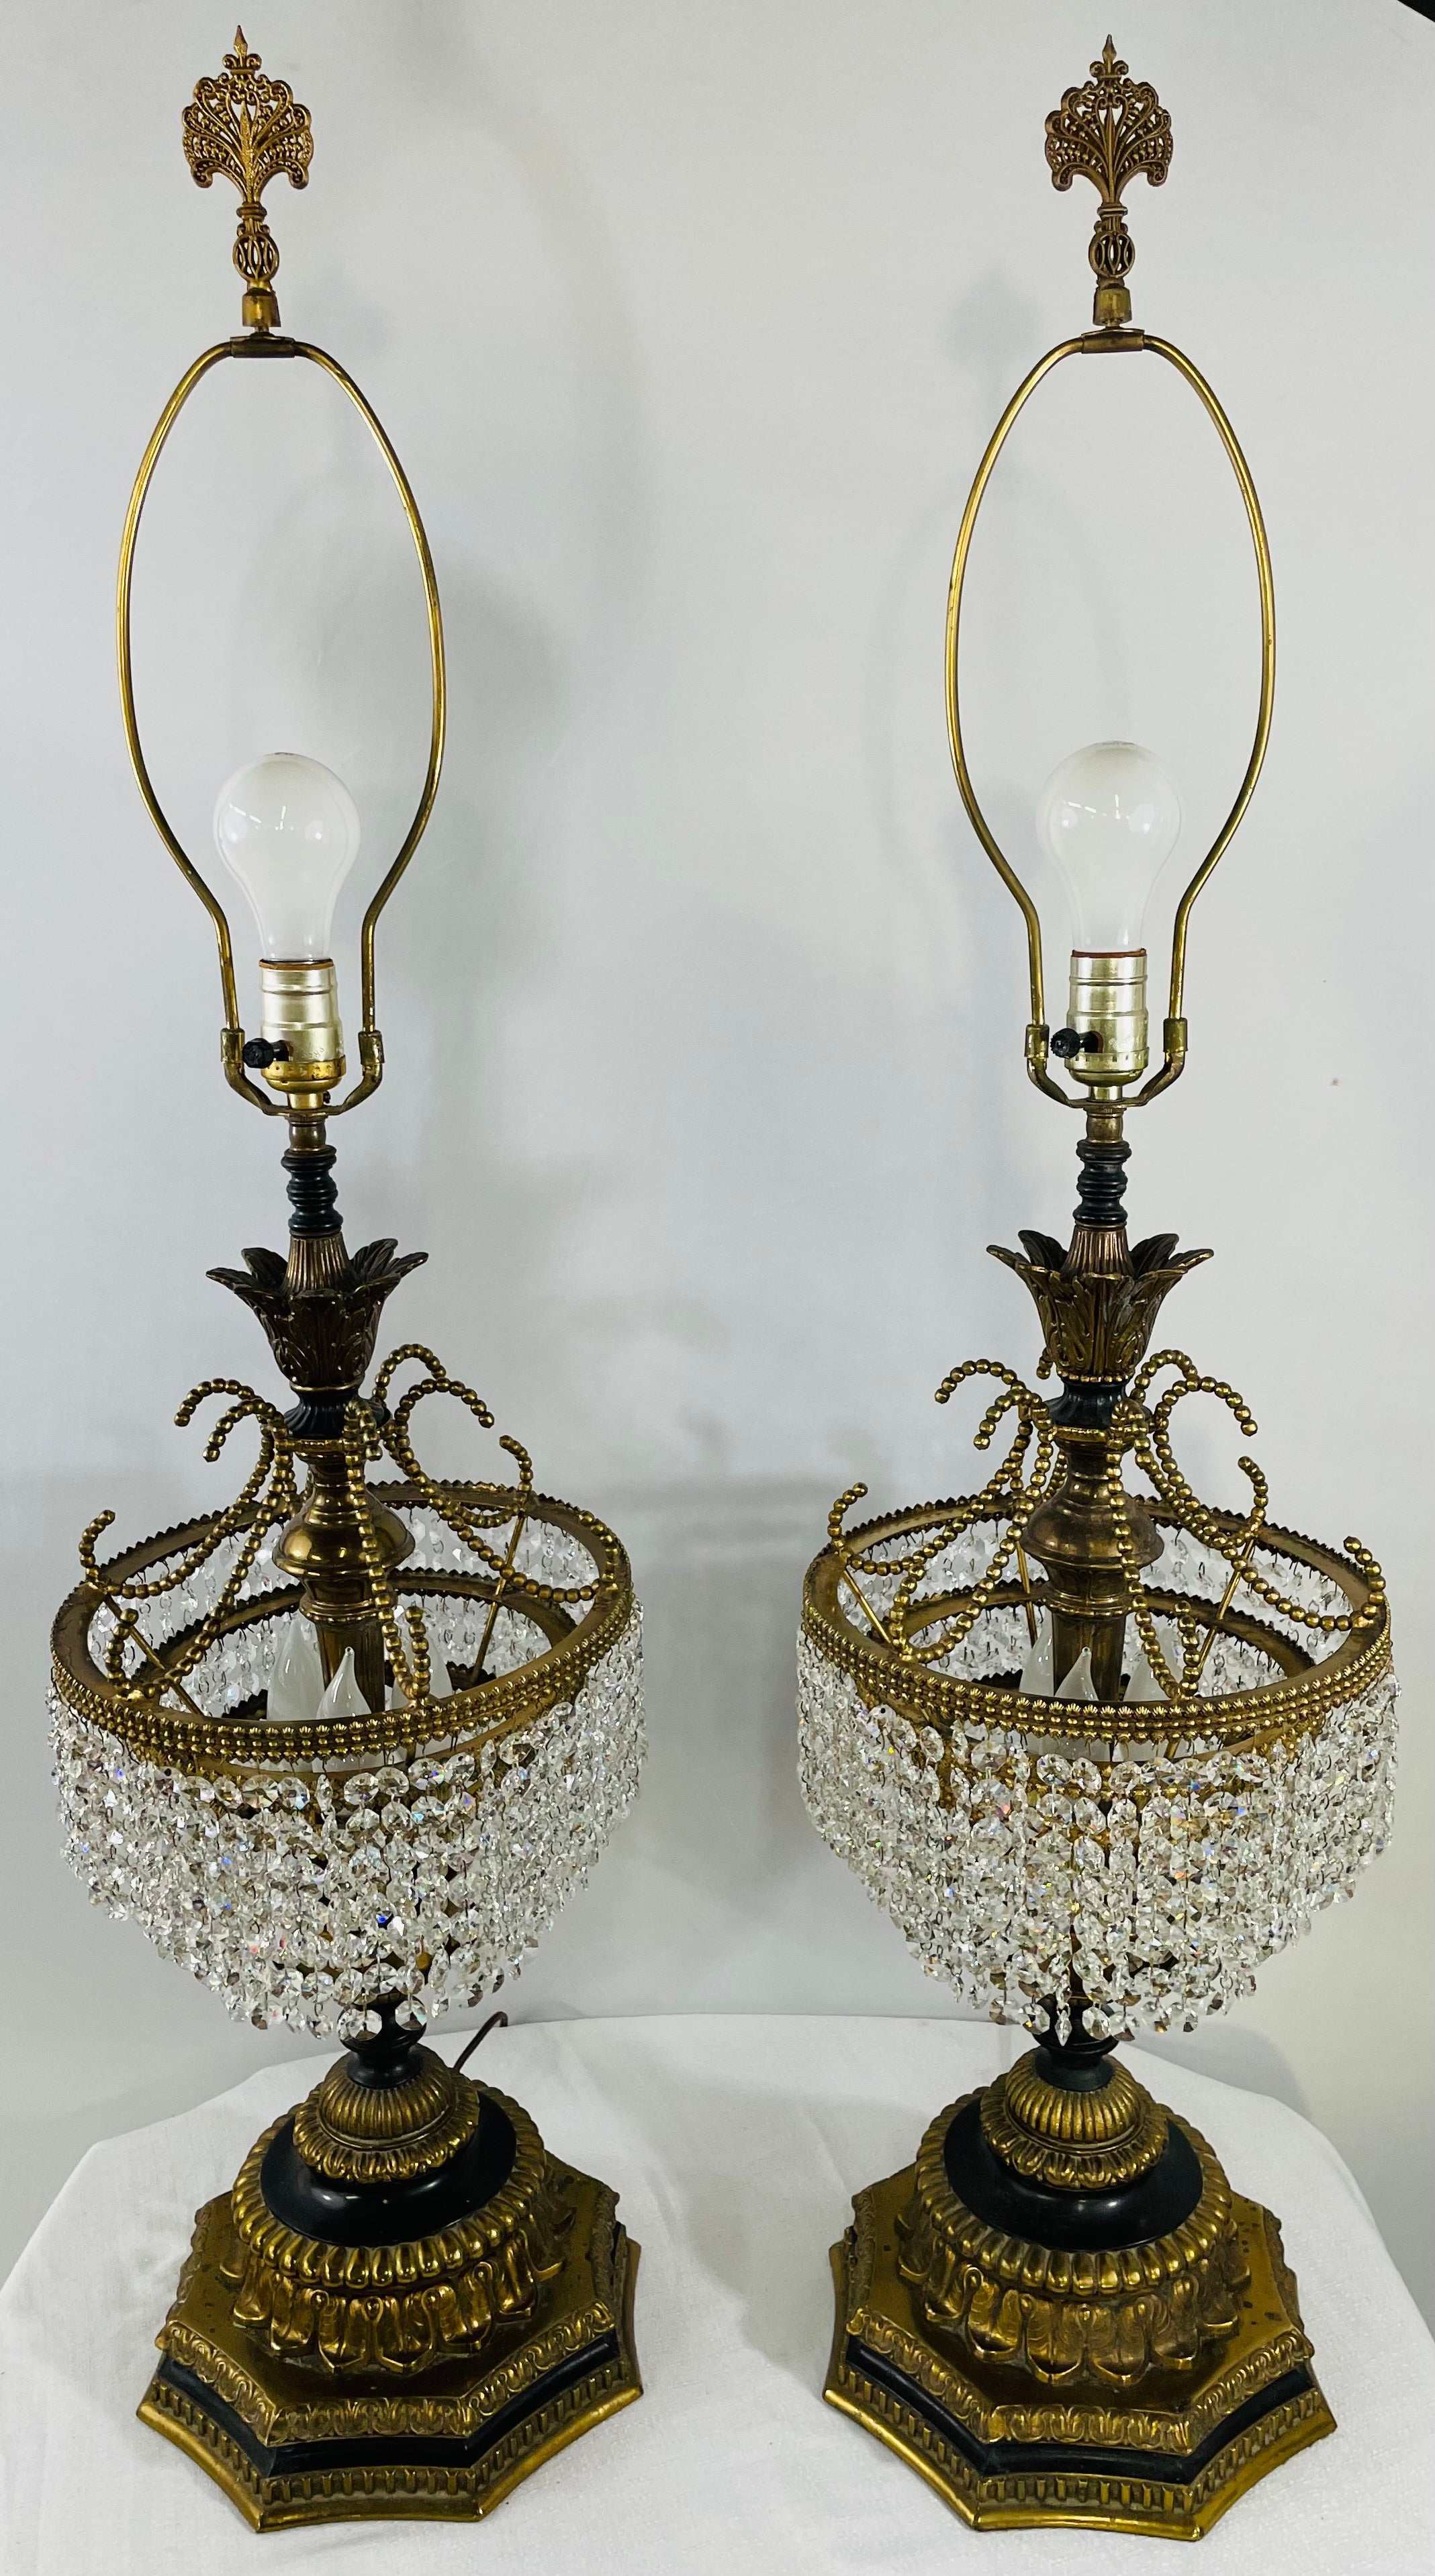 Une paire de majestueuses lampes de table Empire français Hollywood Regency. La colonne de la lampe est sculptée en bronze sous la forme d'une fleur épanouie attachée à un gâteau de mariage à trois étages avec des cristaux clairs. La base